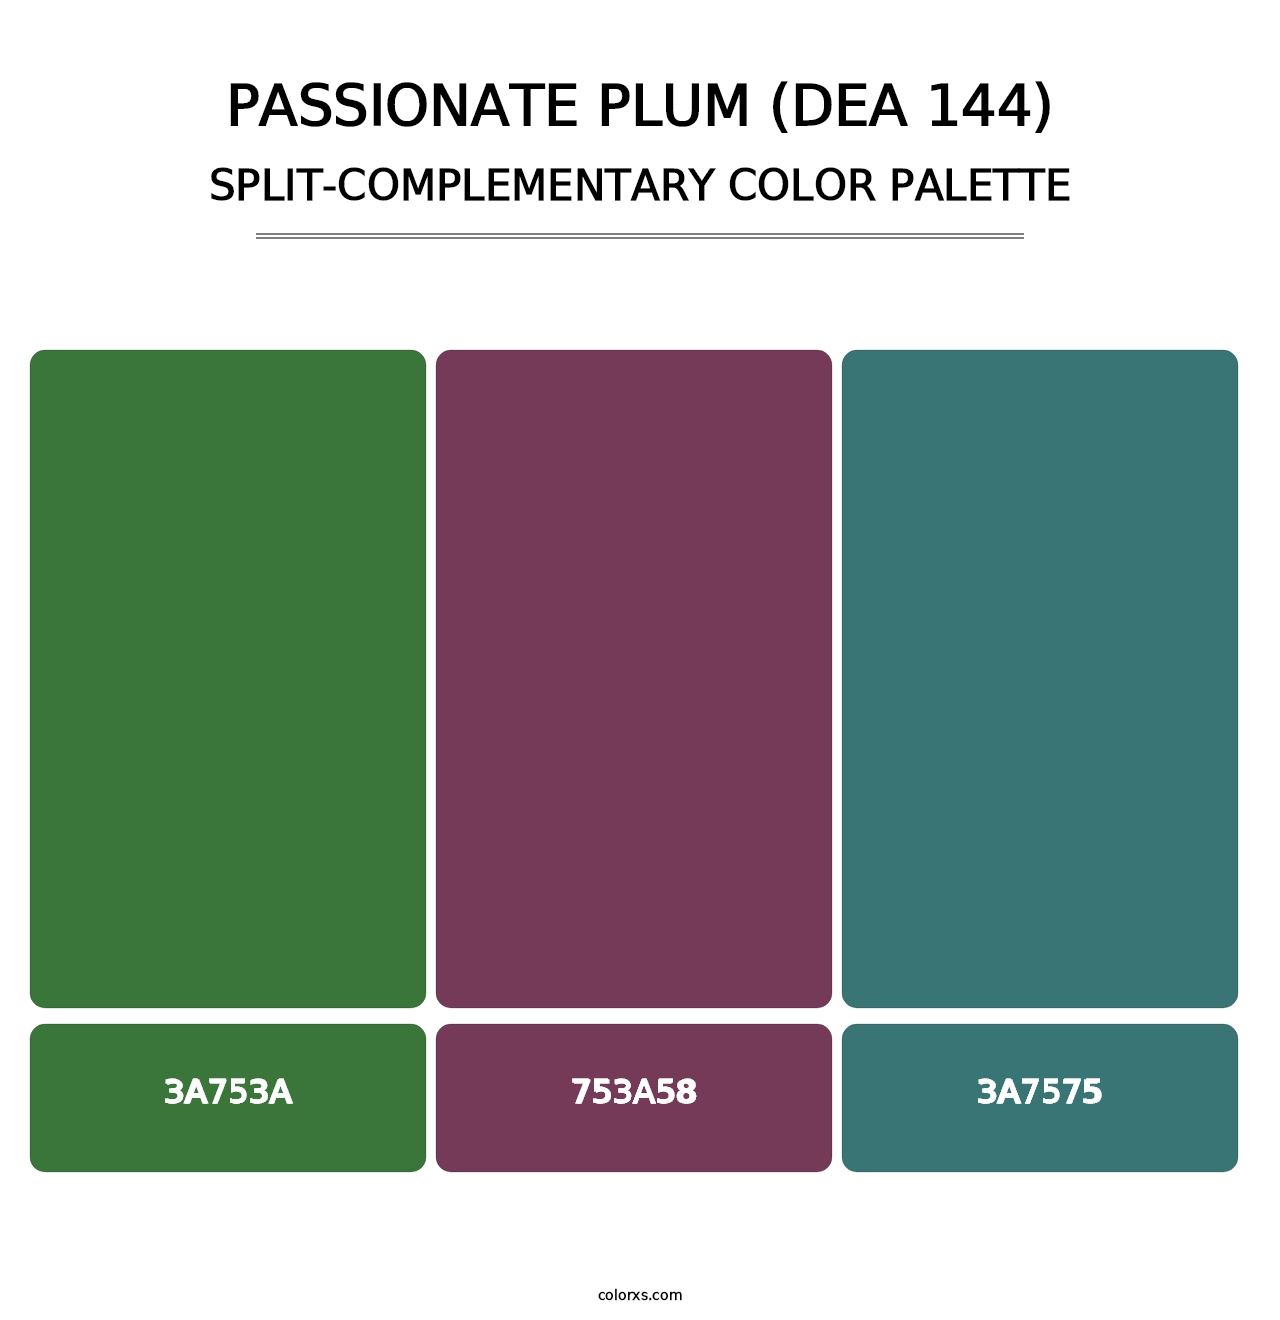 Passionate Plum (DEA 144) - Split-Complementary Color Palette